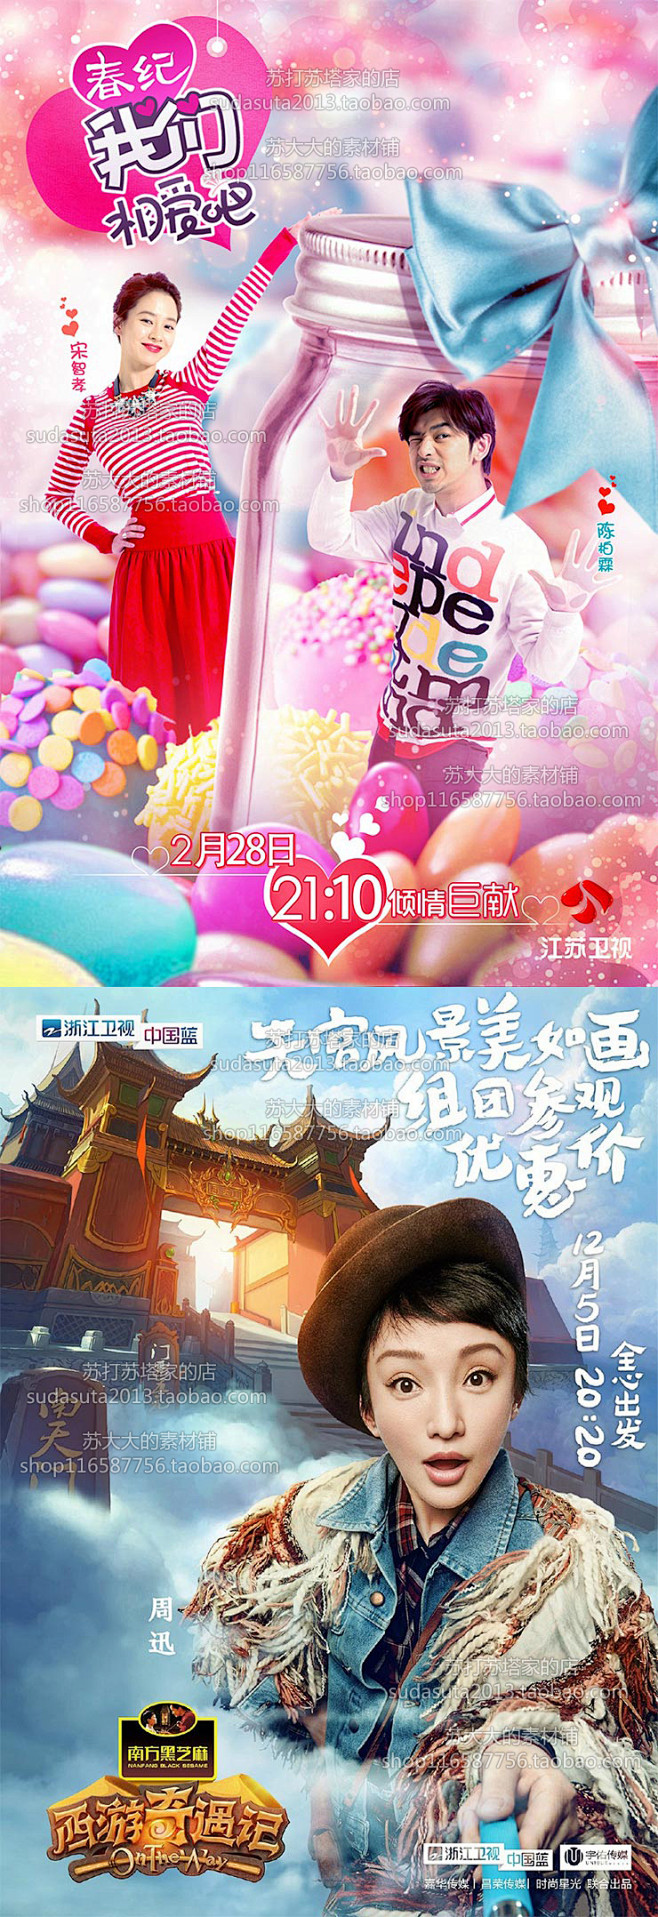 1万张综艺宣传海报设计娱乐综艺节目h5界...